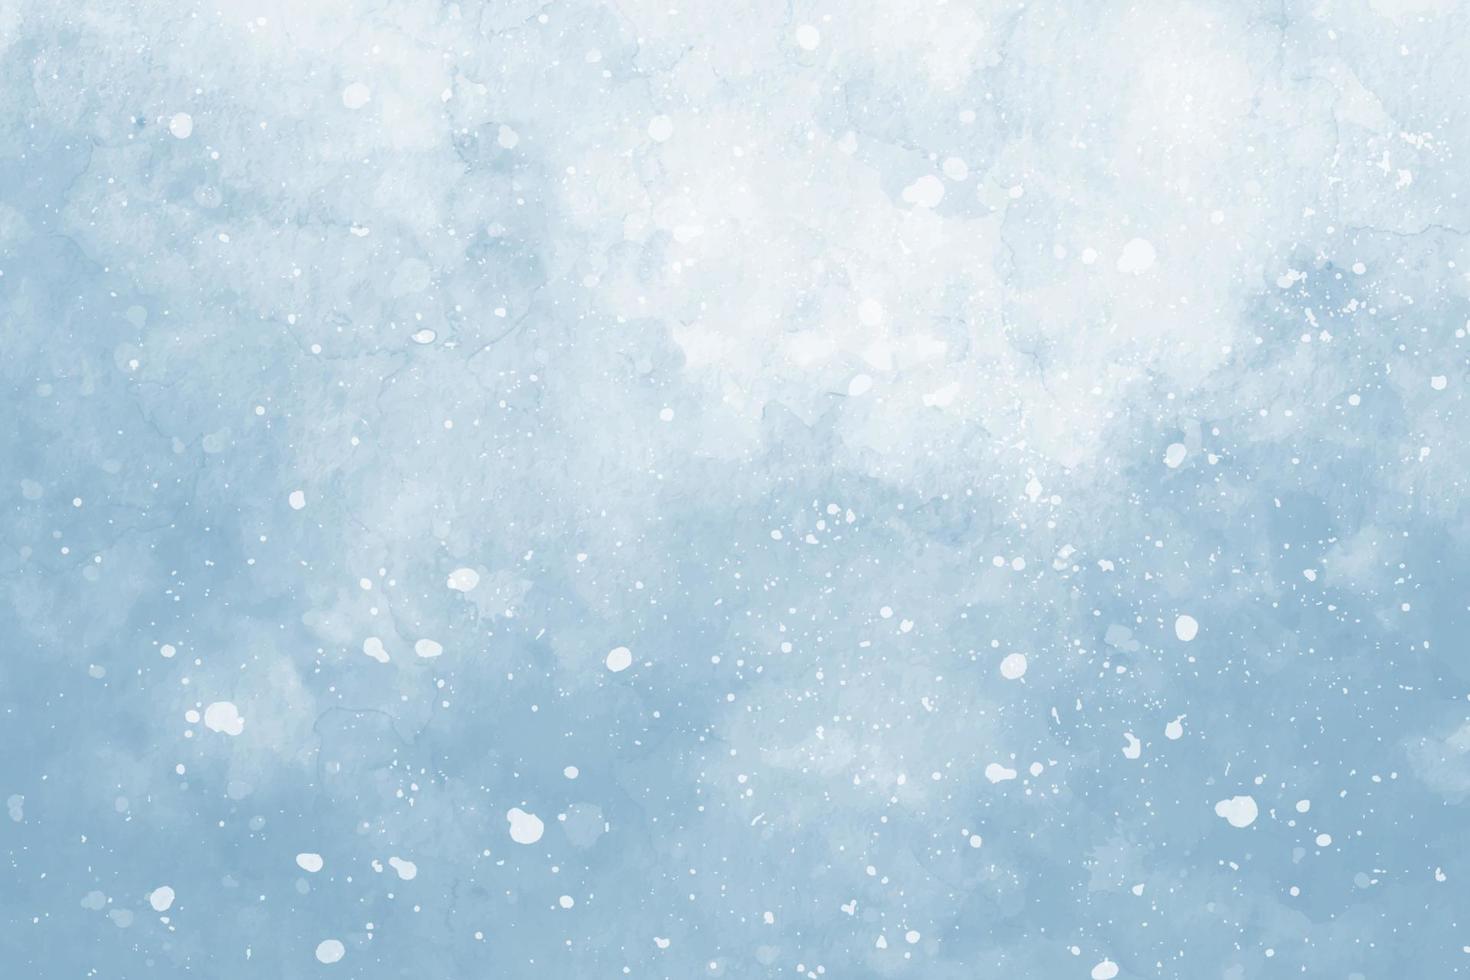 abstrait bleu aquarelle d'hiver. motif de ciel avec de la neige vecteur